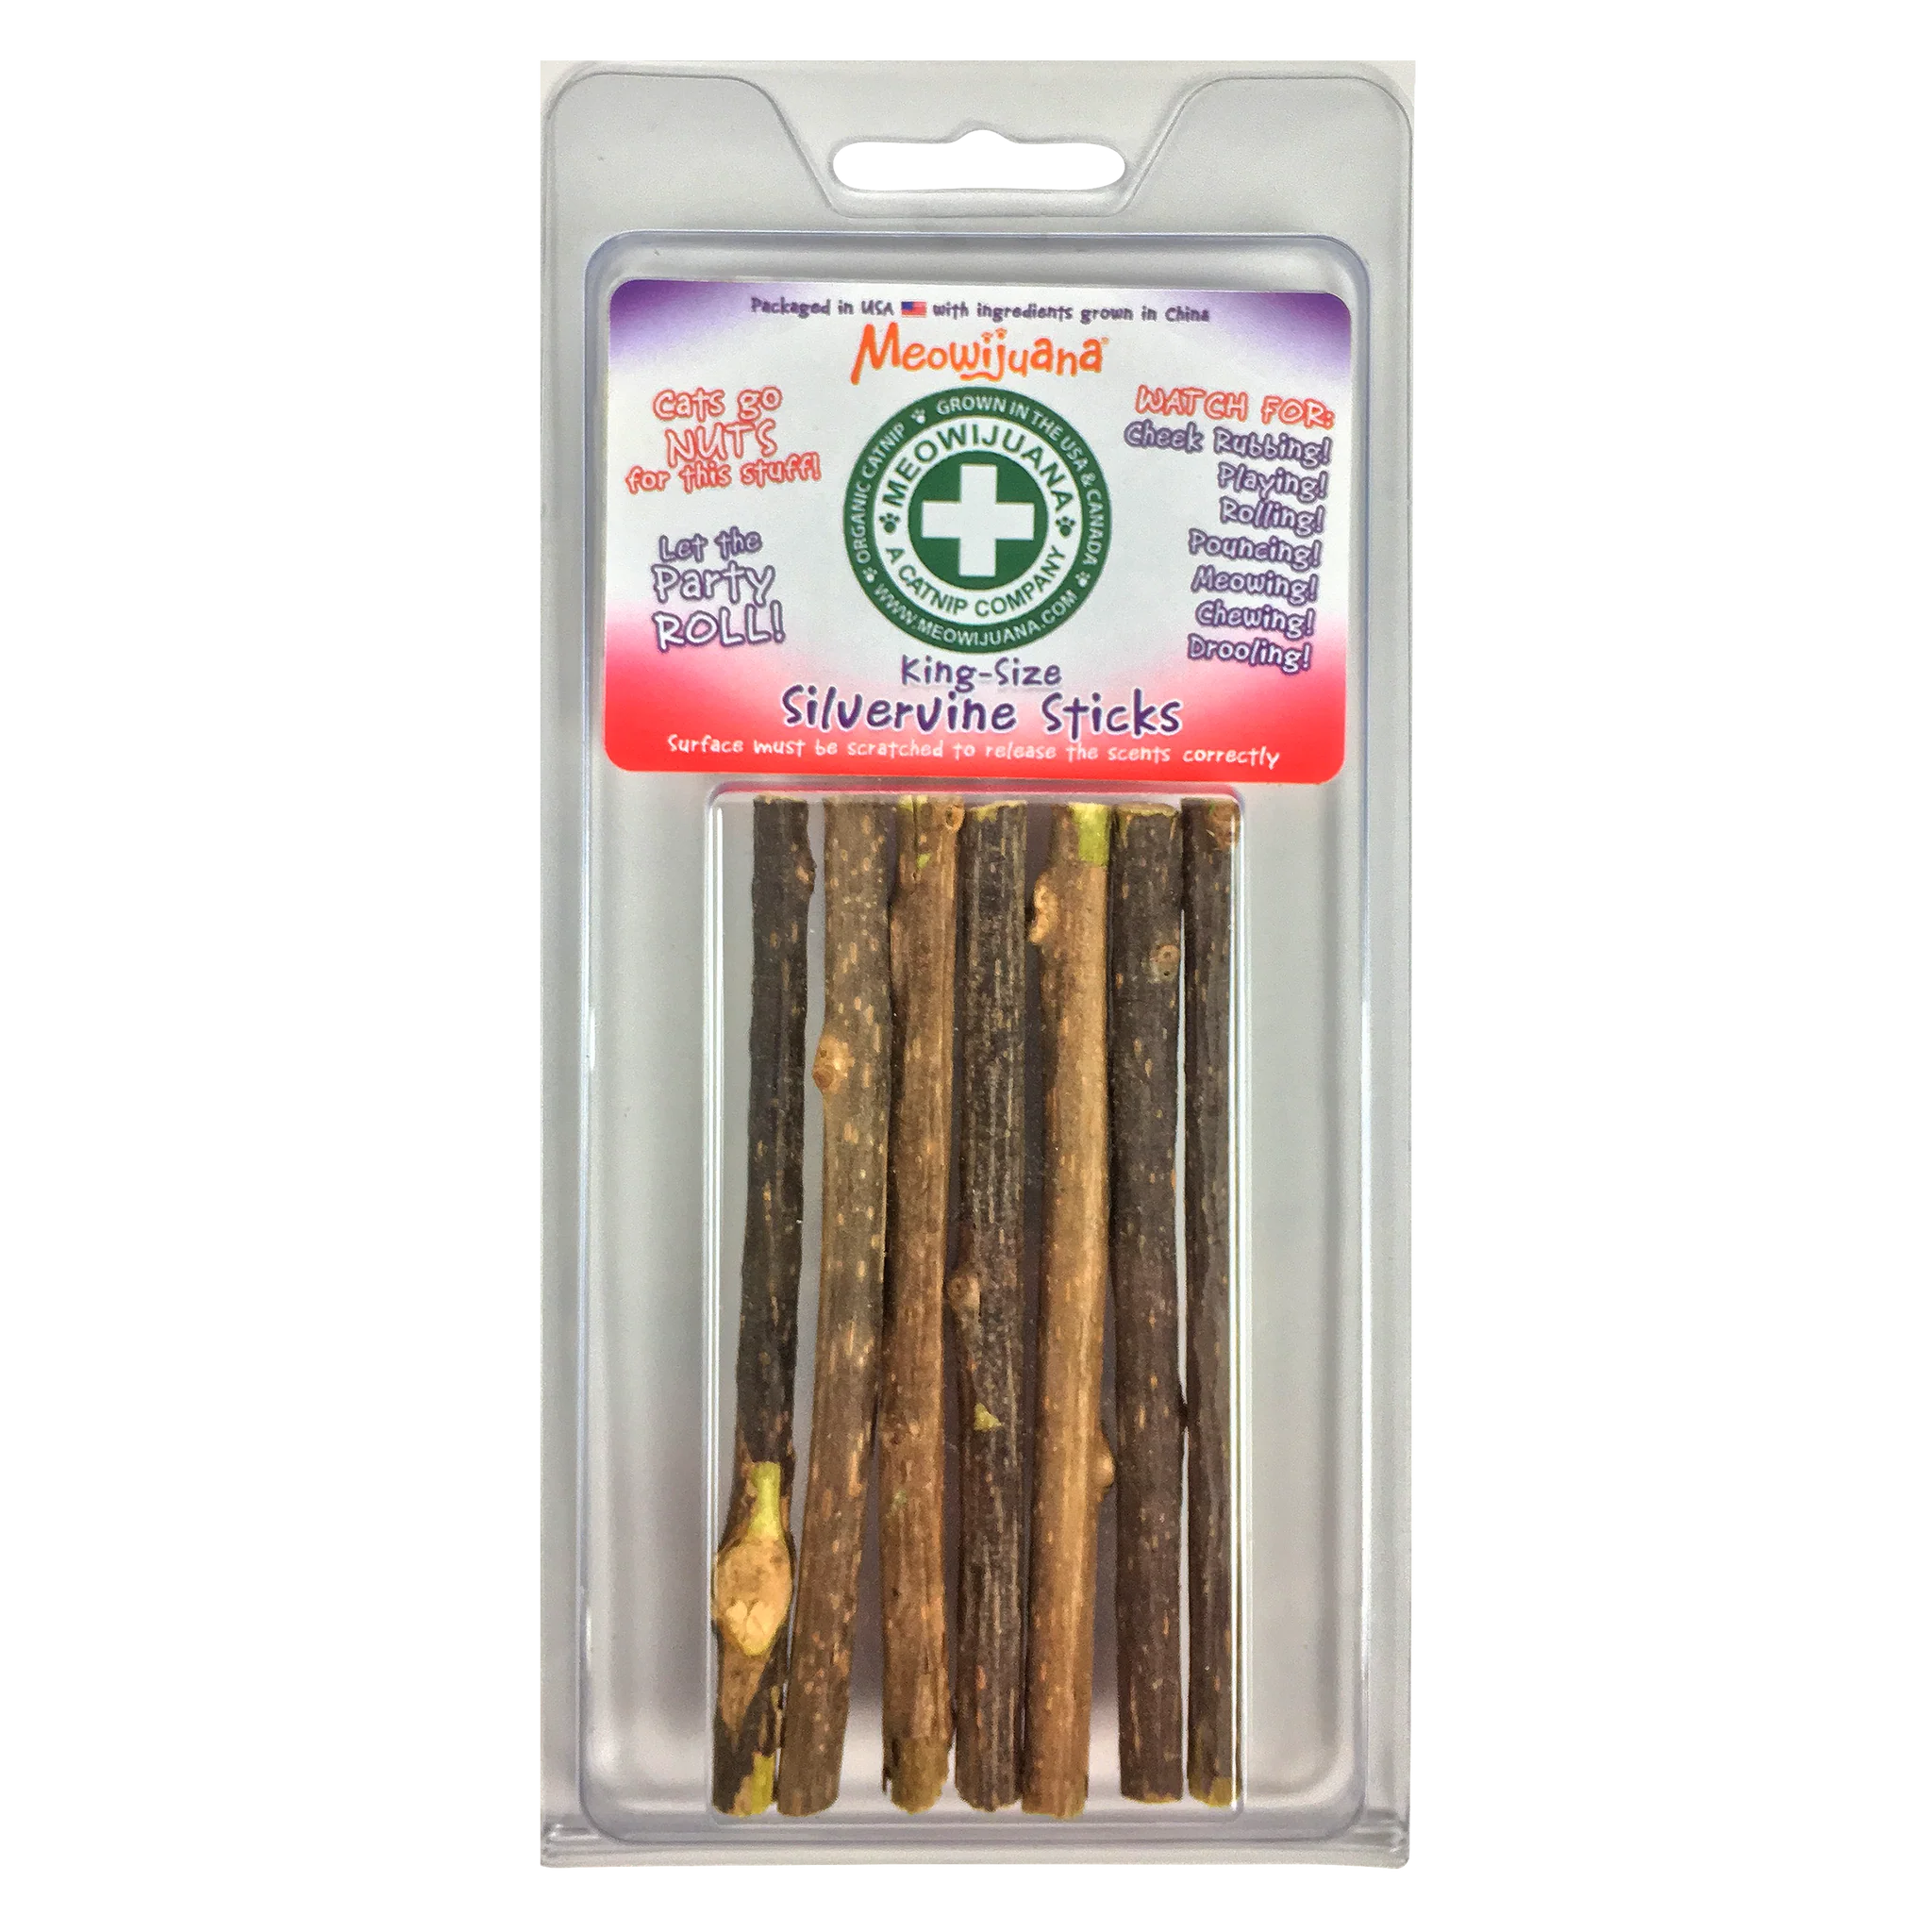 Meowijuana Catnip Silvervine Sticks